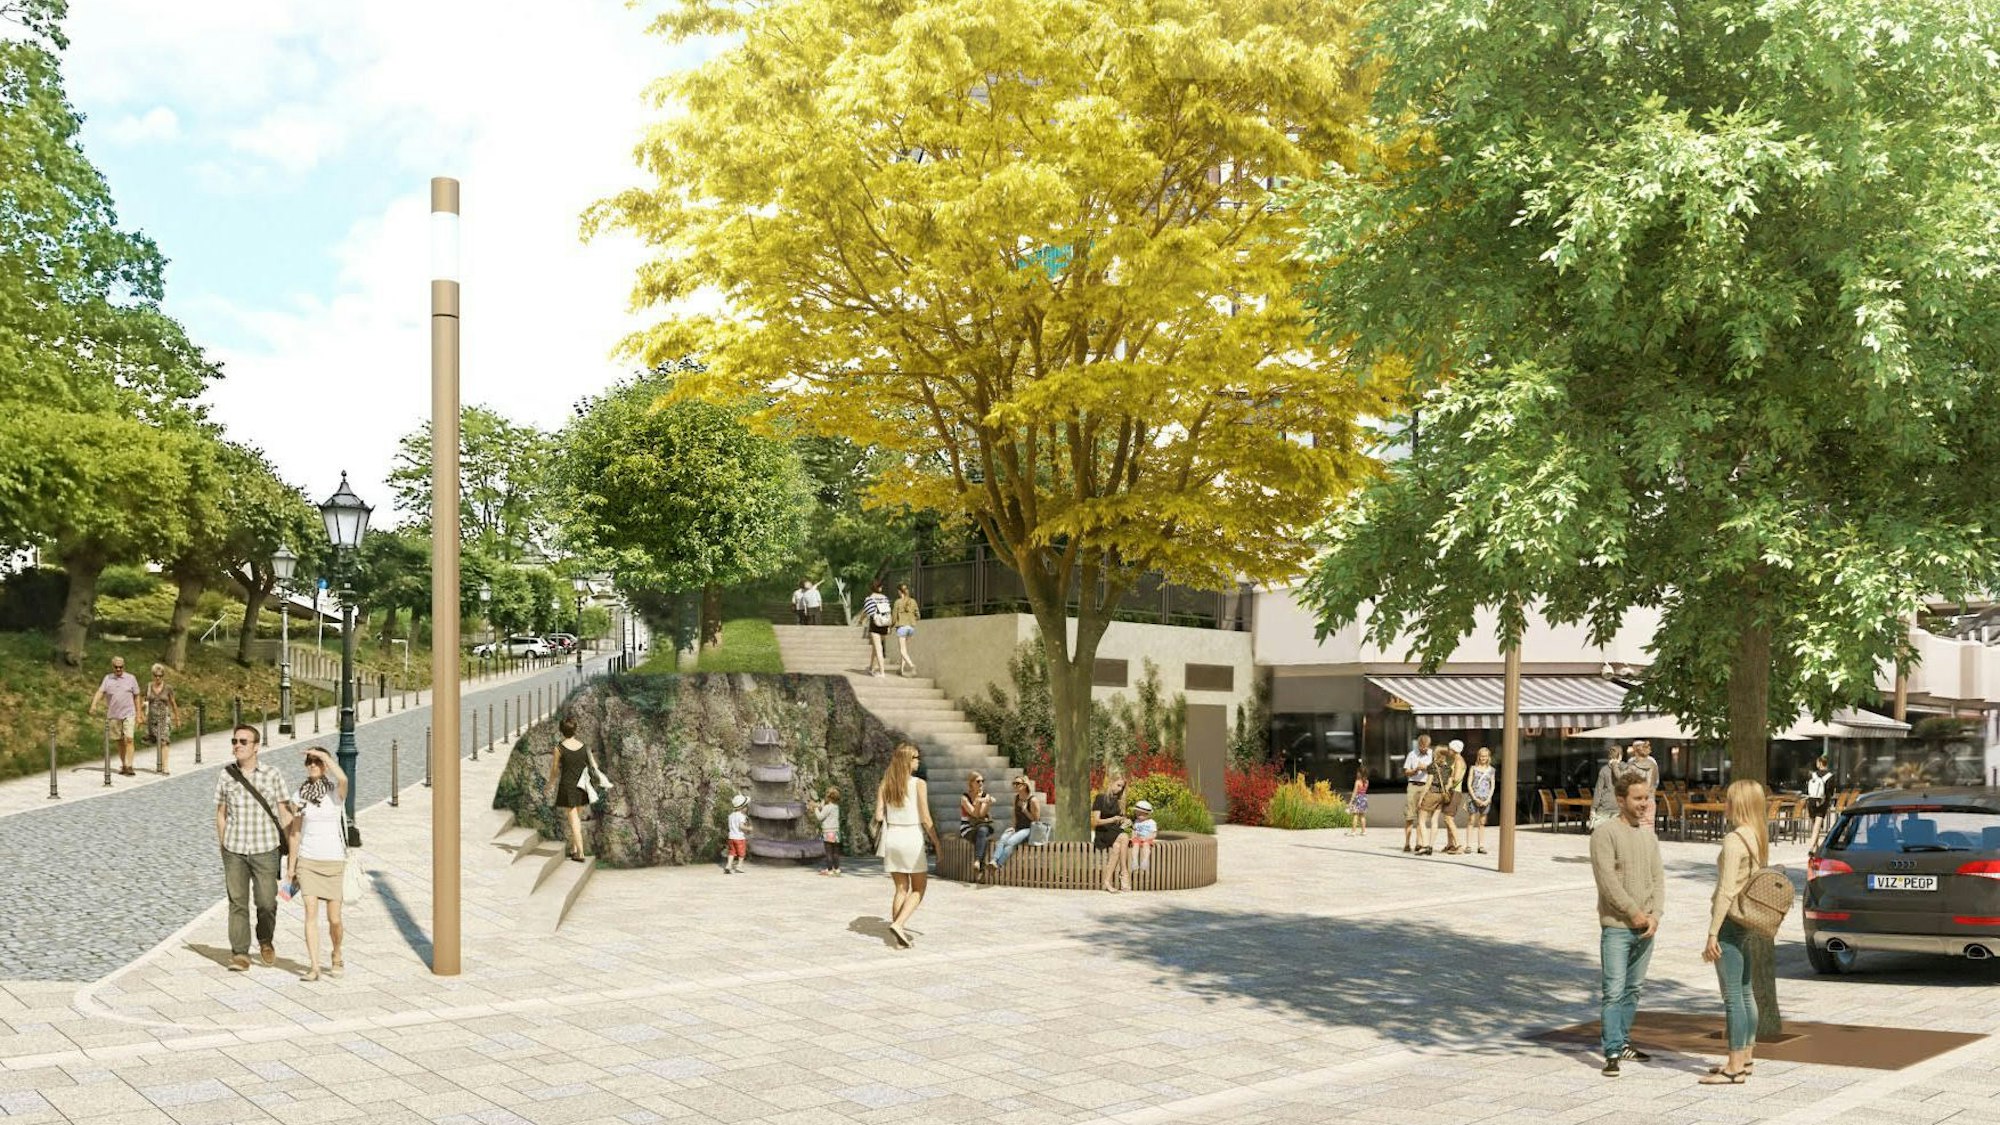 Eine Entwurfszeichnung zeigt die Lage des neuen Emilienbrunnens mit einem Baum auf dem kleinen Platz davor.